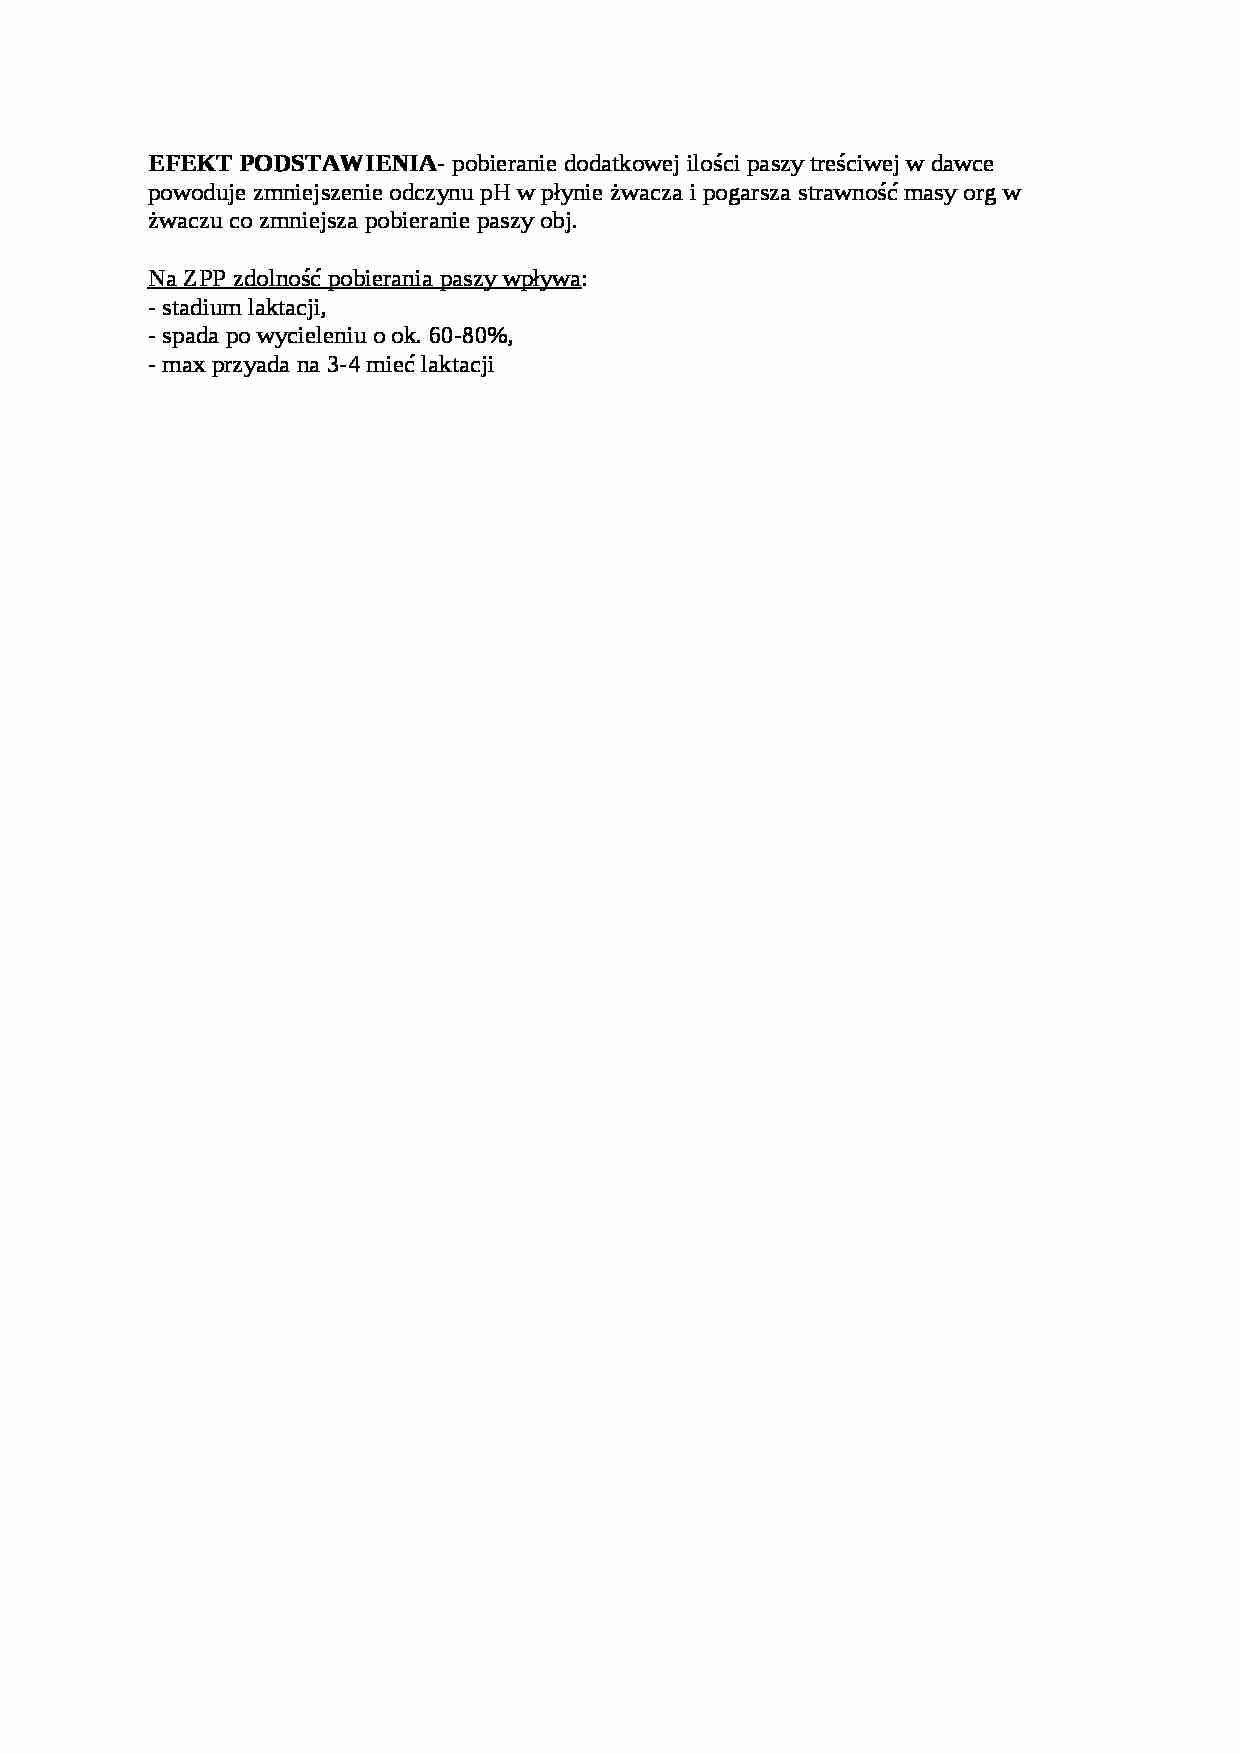 Trawienie poligastryczne- efekt podstawienia - opracowanie, sem IV - strona 1